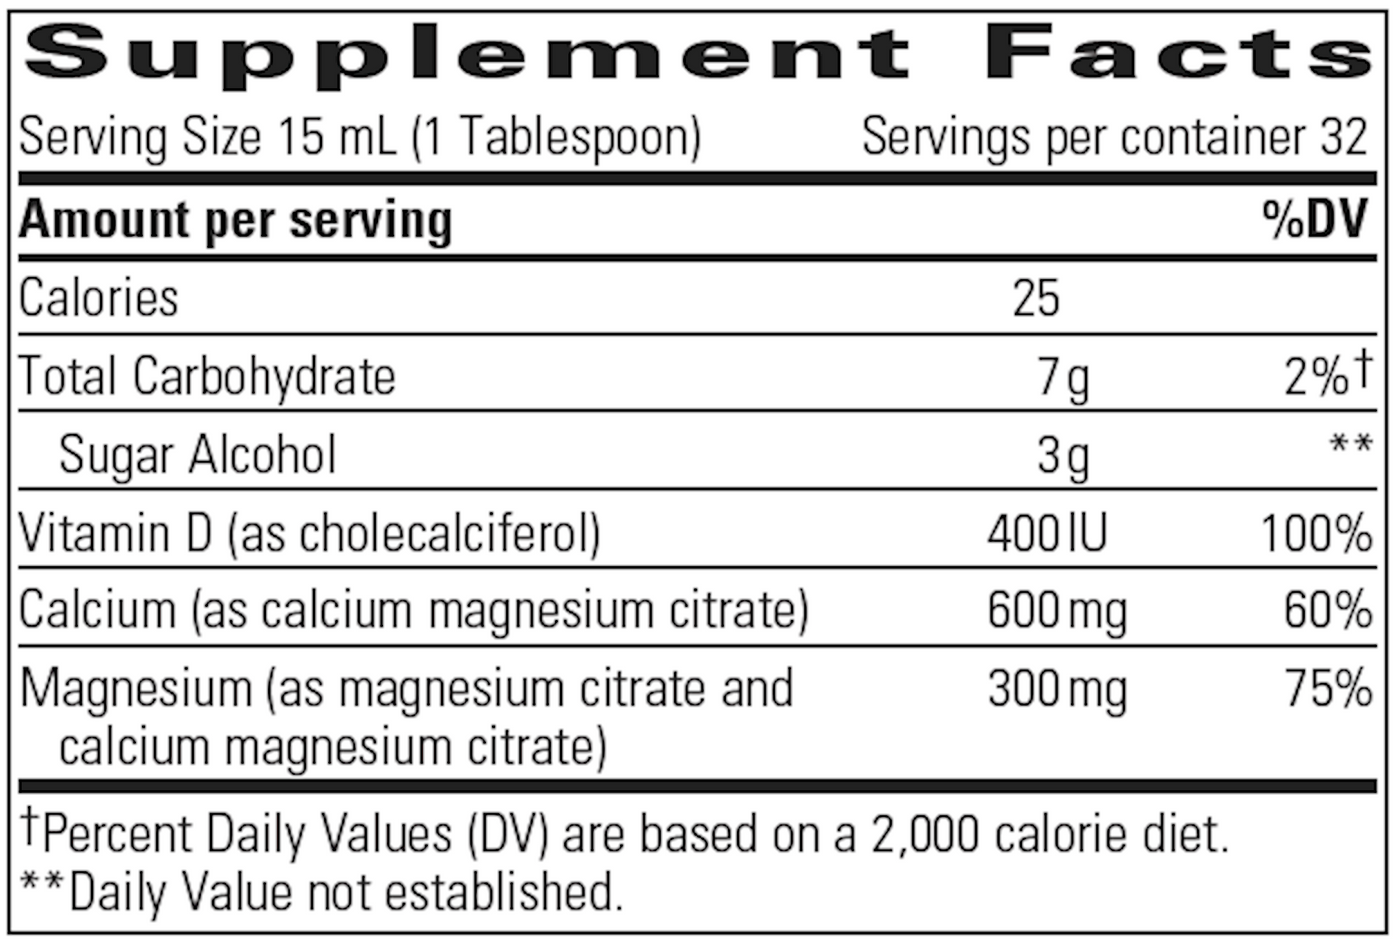 Liquid Calcium Magnesium 2:1 Orange 16oz Curated Wellness